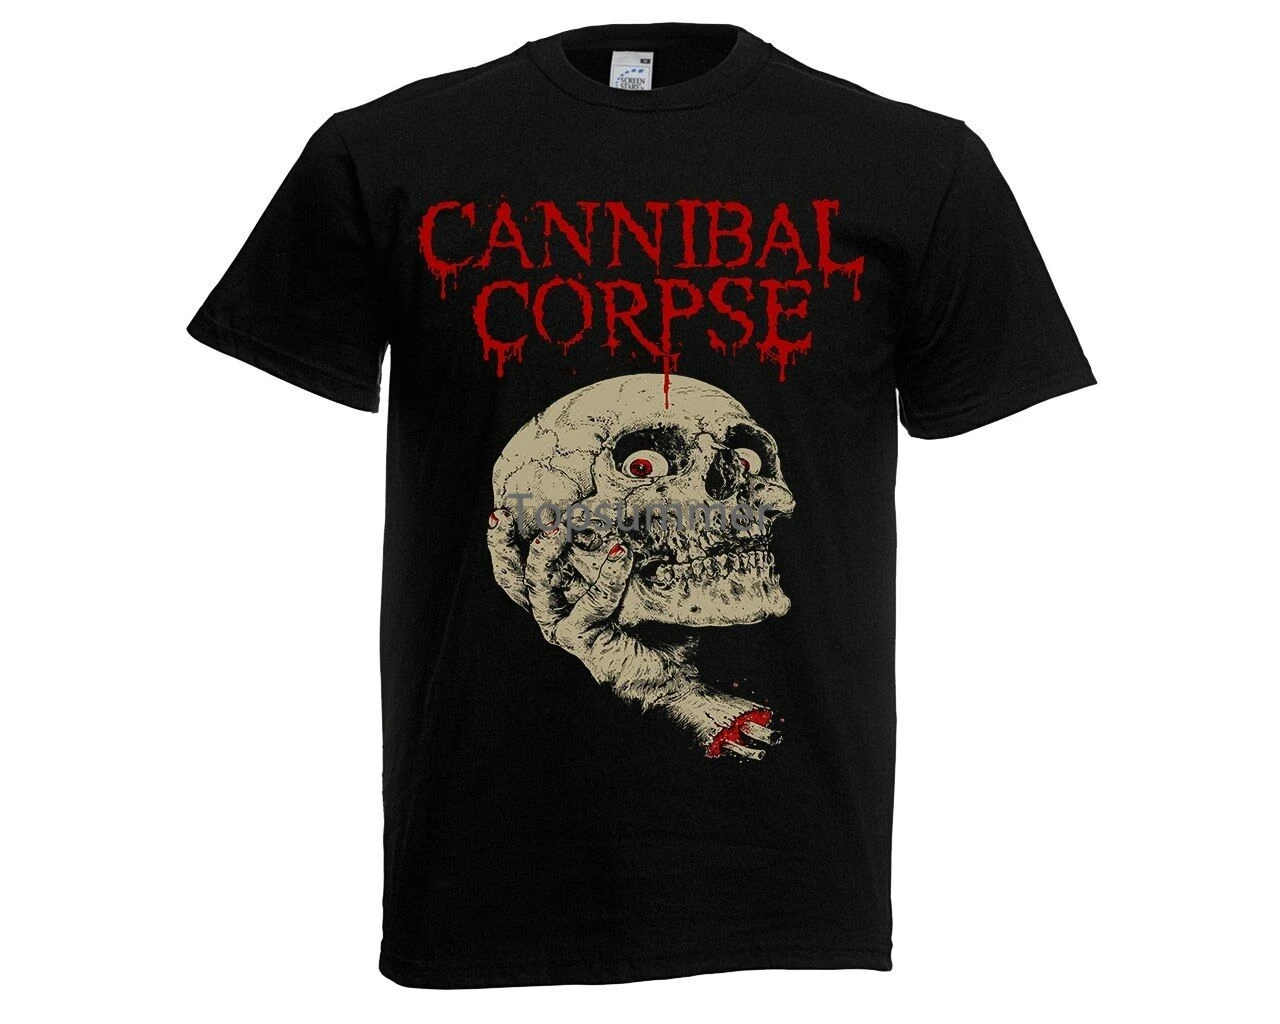 

Cannibal, футболка с трупом, жесткая смерть, металл, Новинка